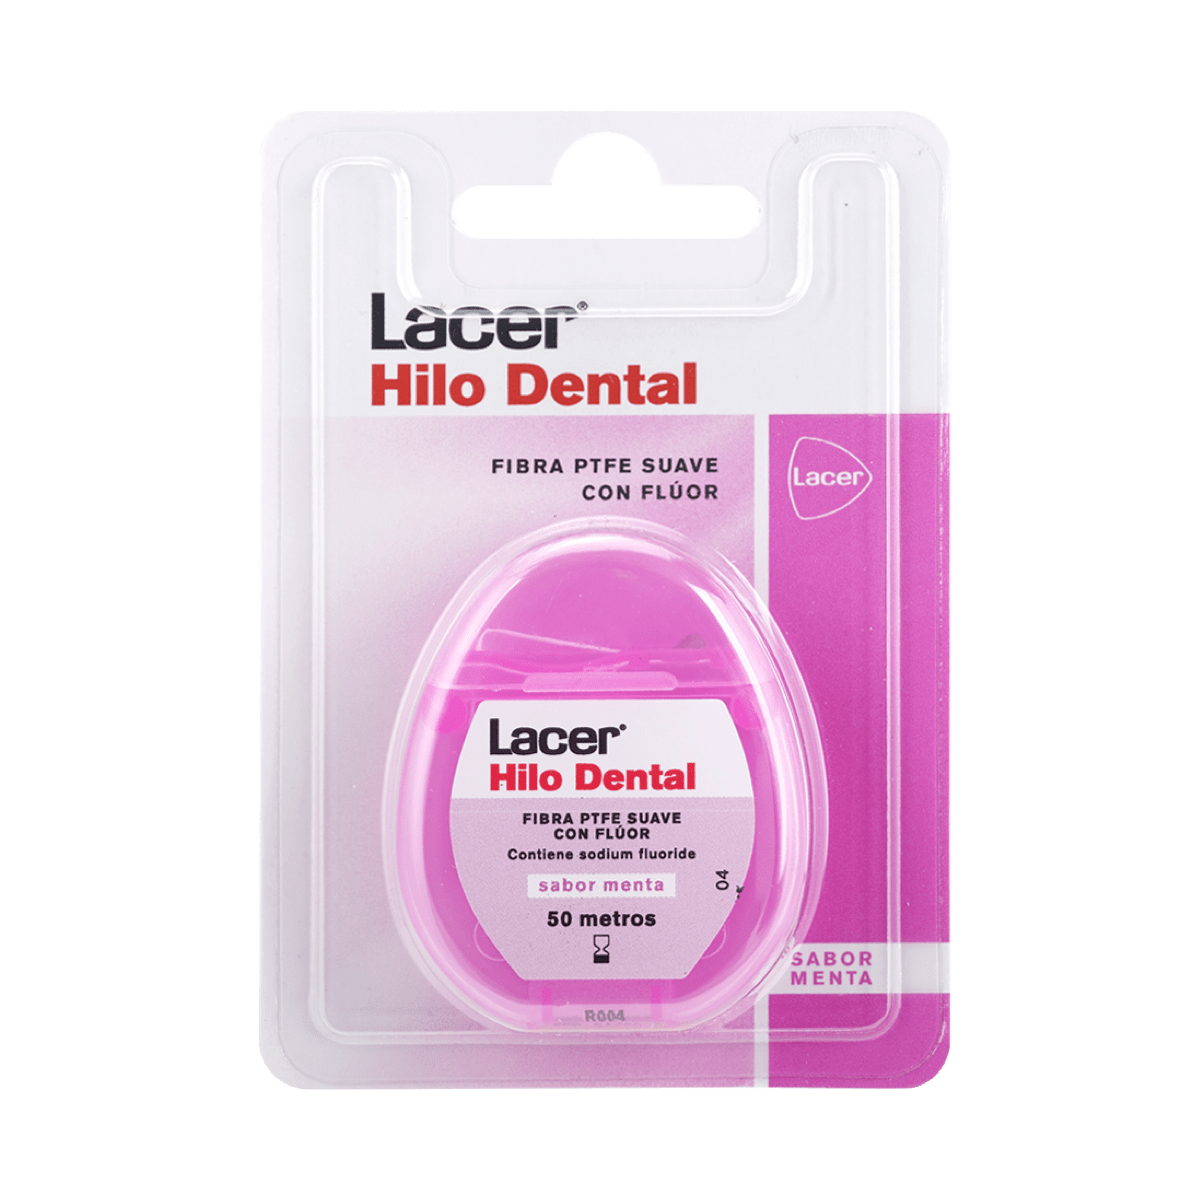 Lacer Hilo Dental